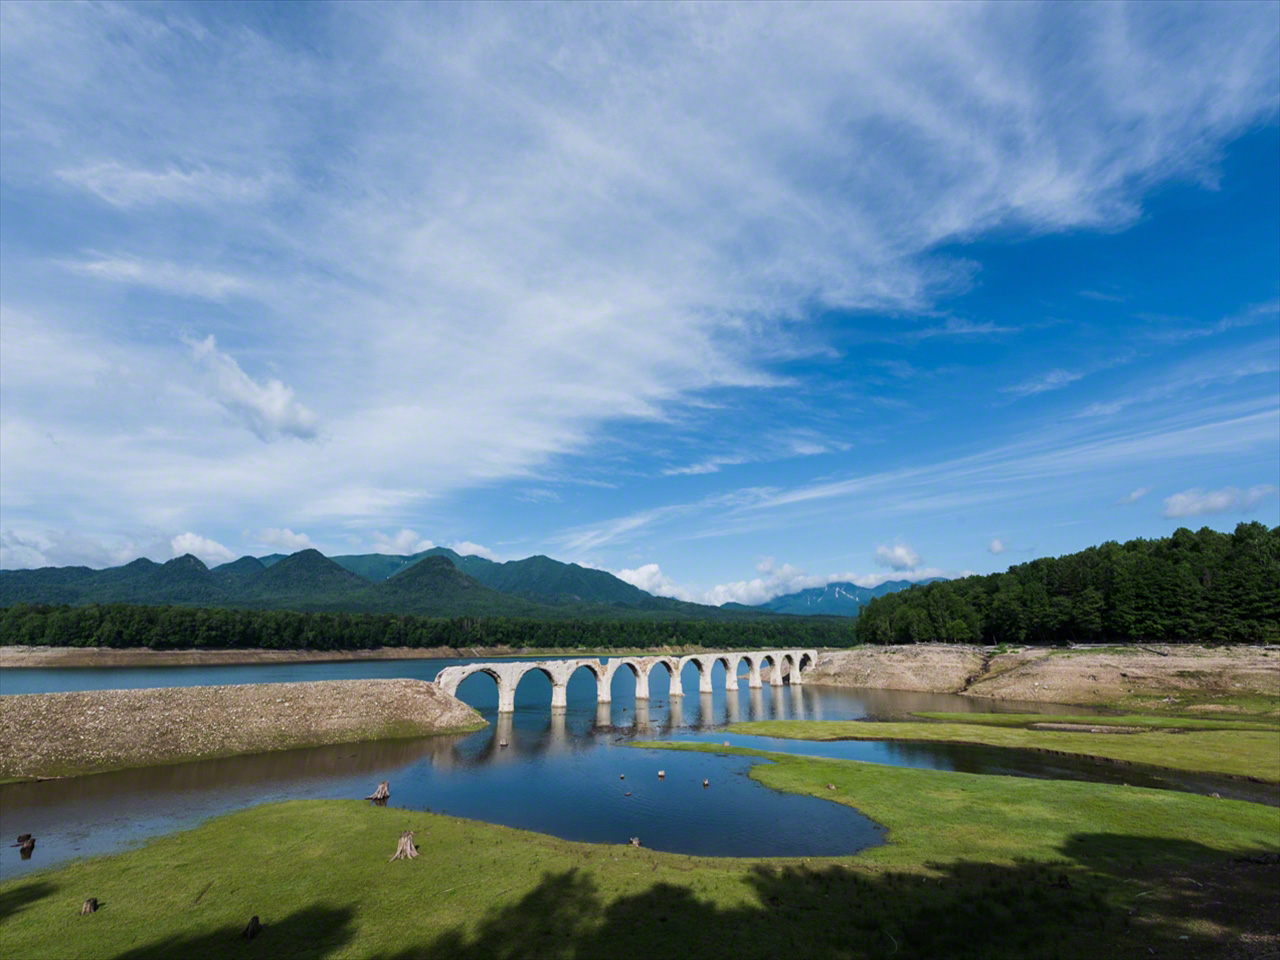 北海道の澄み渡った夏空の下、周囲の自然と調和している。7月